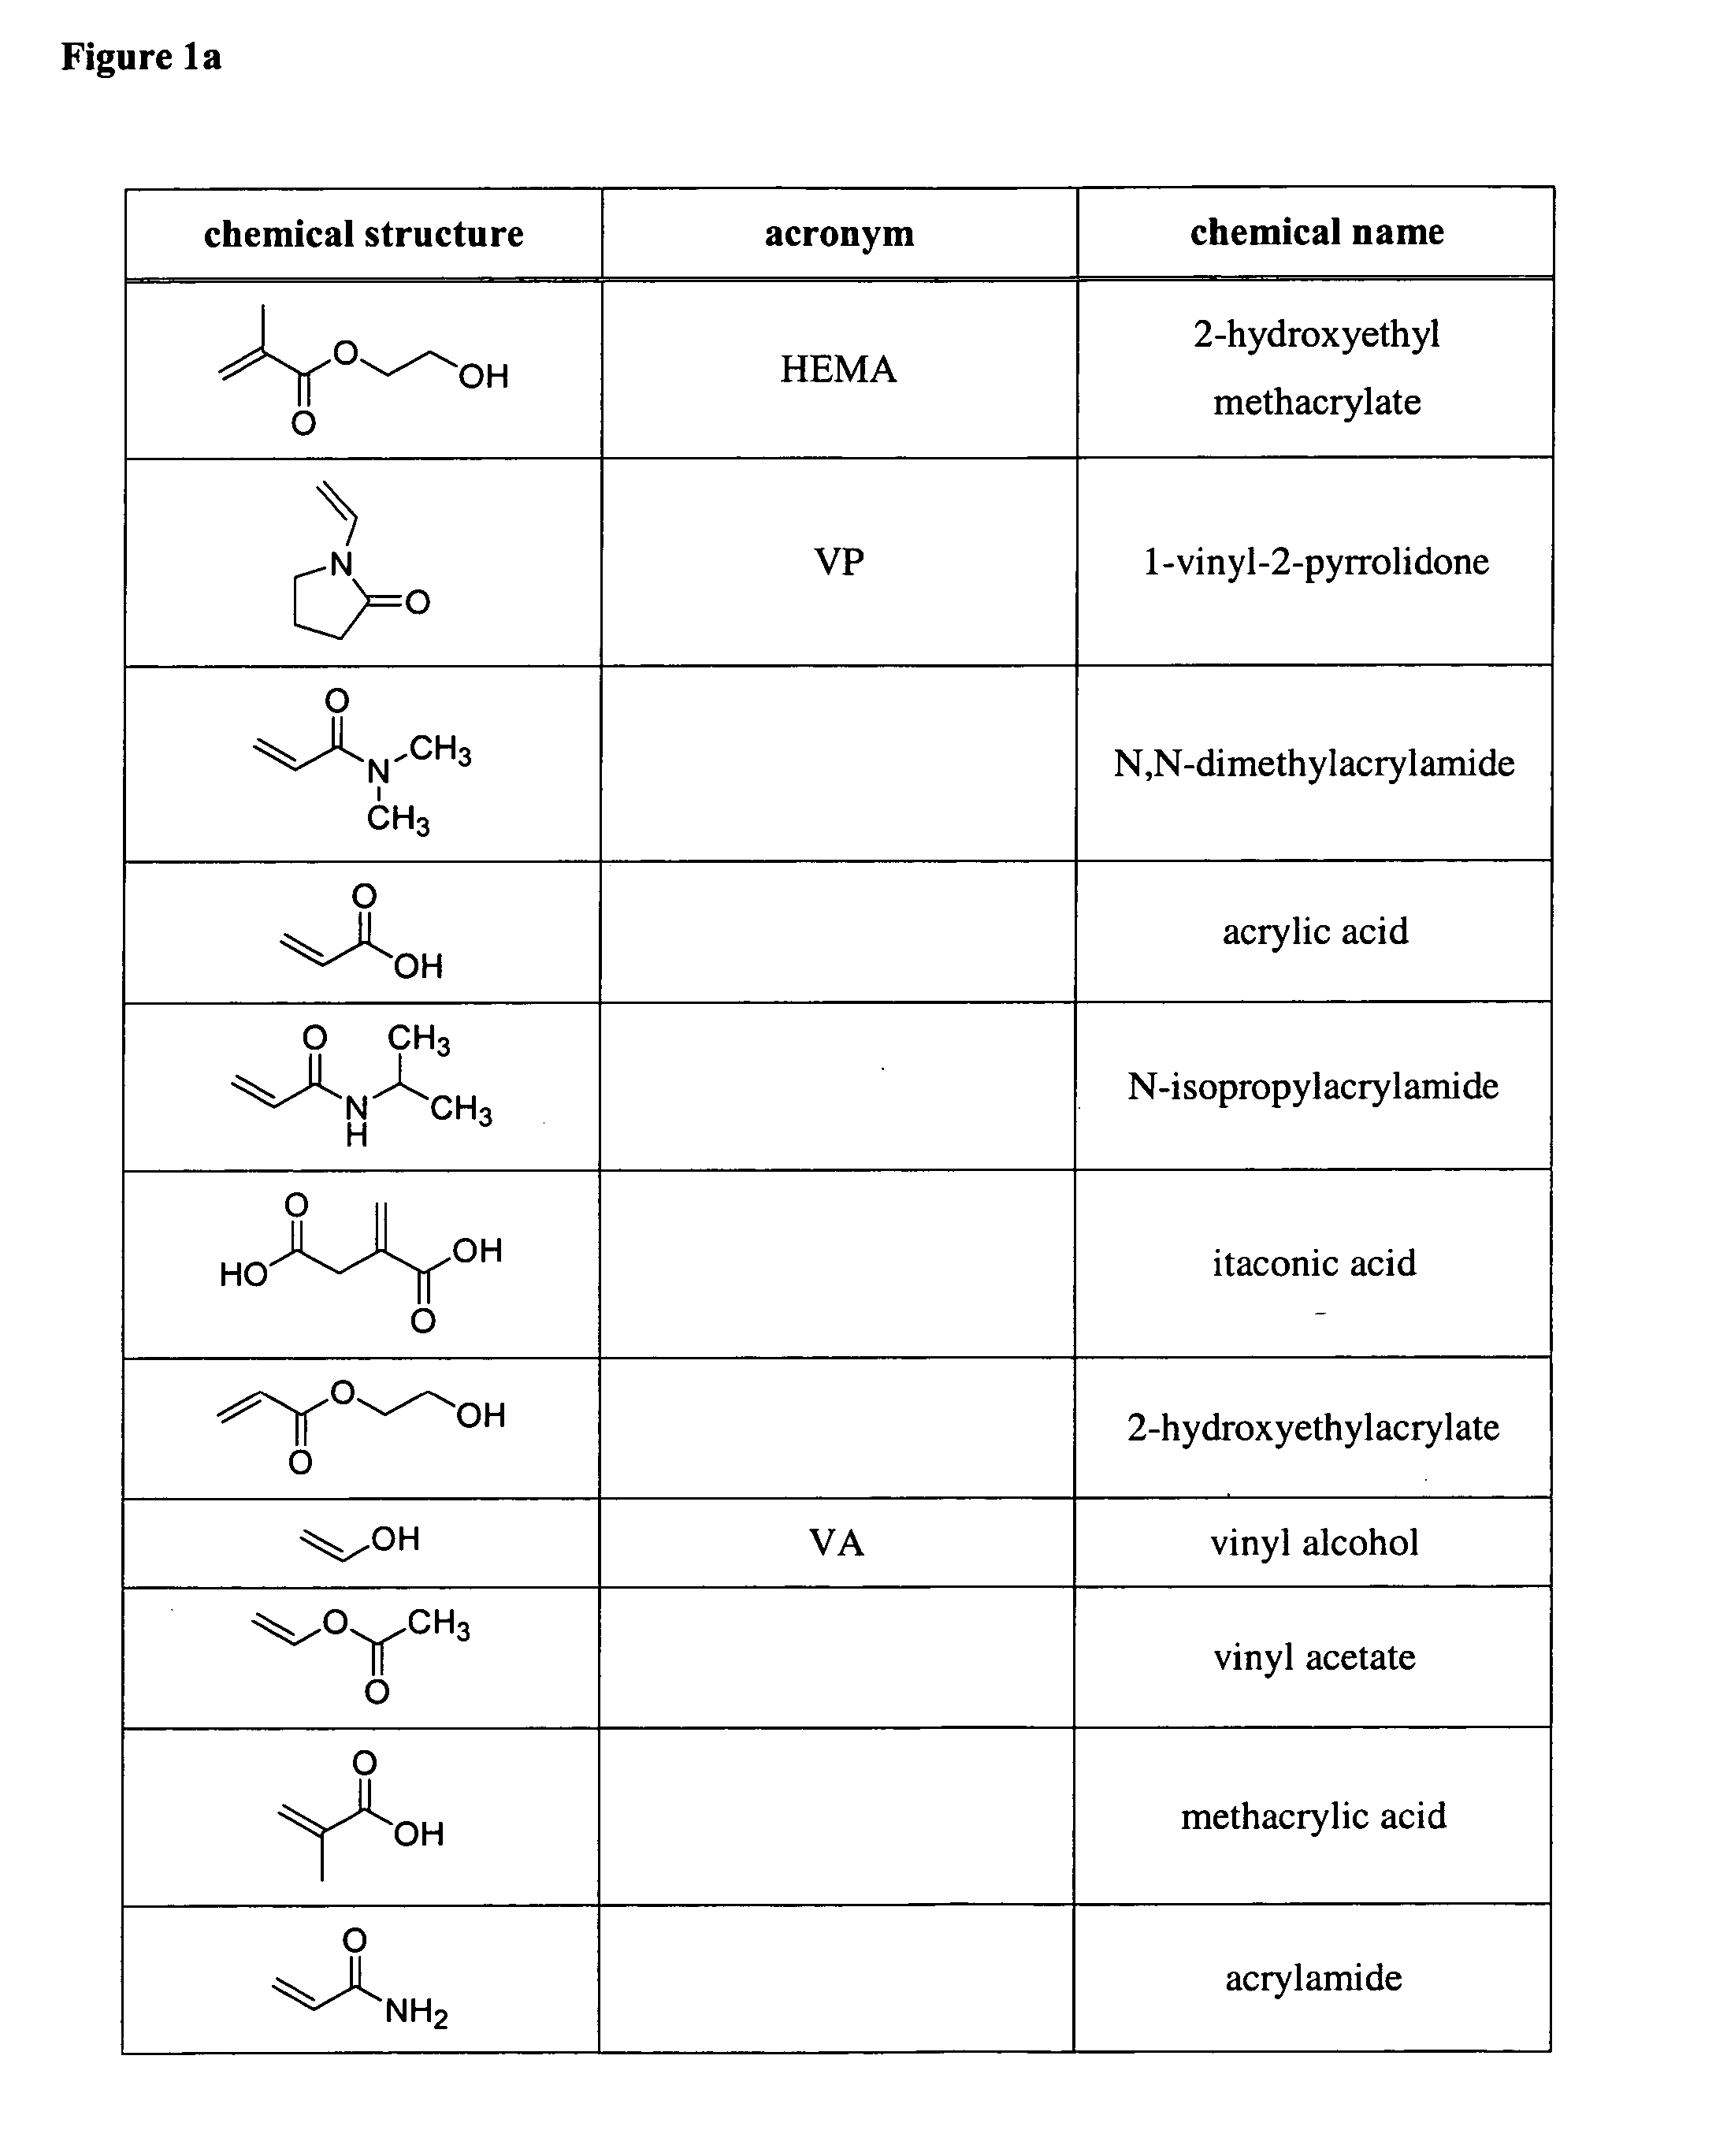 Chemical vapor deposition of hydrogel films